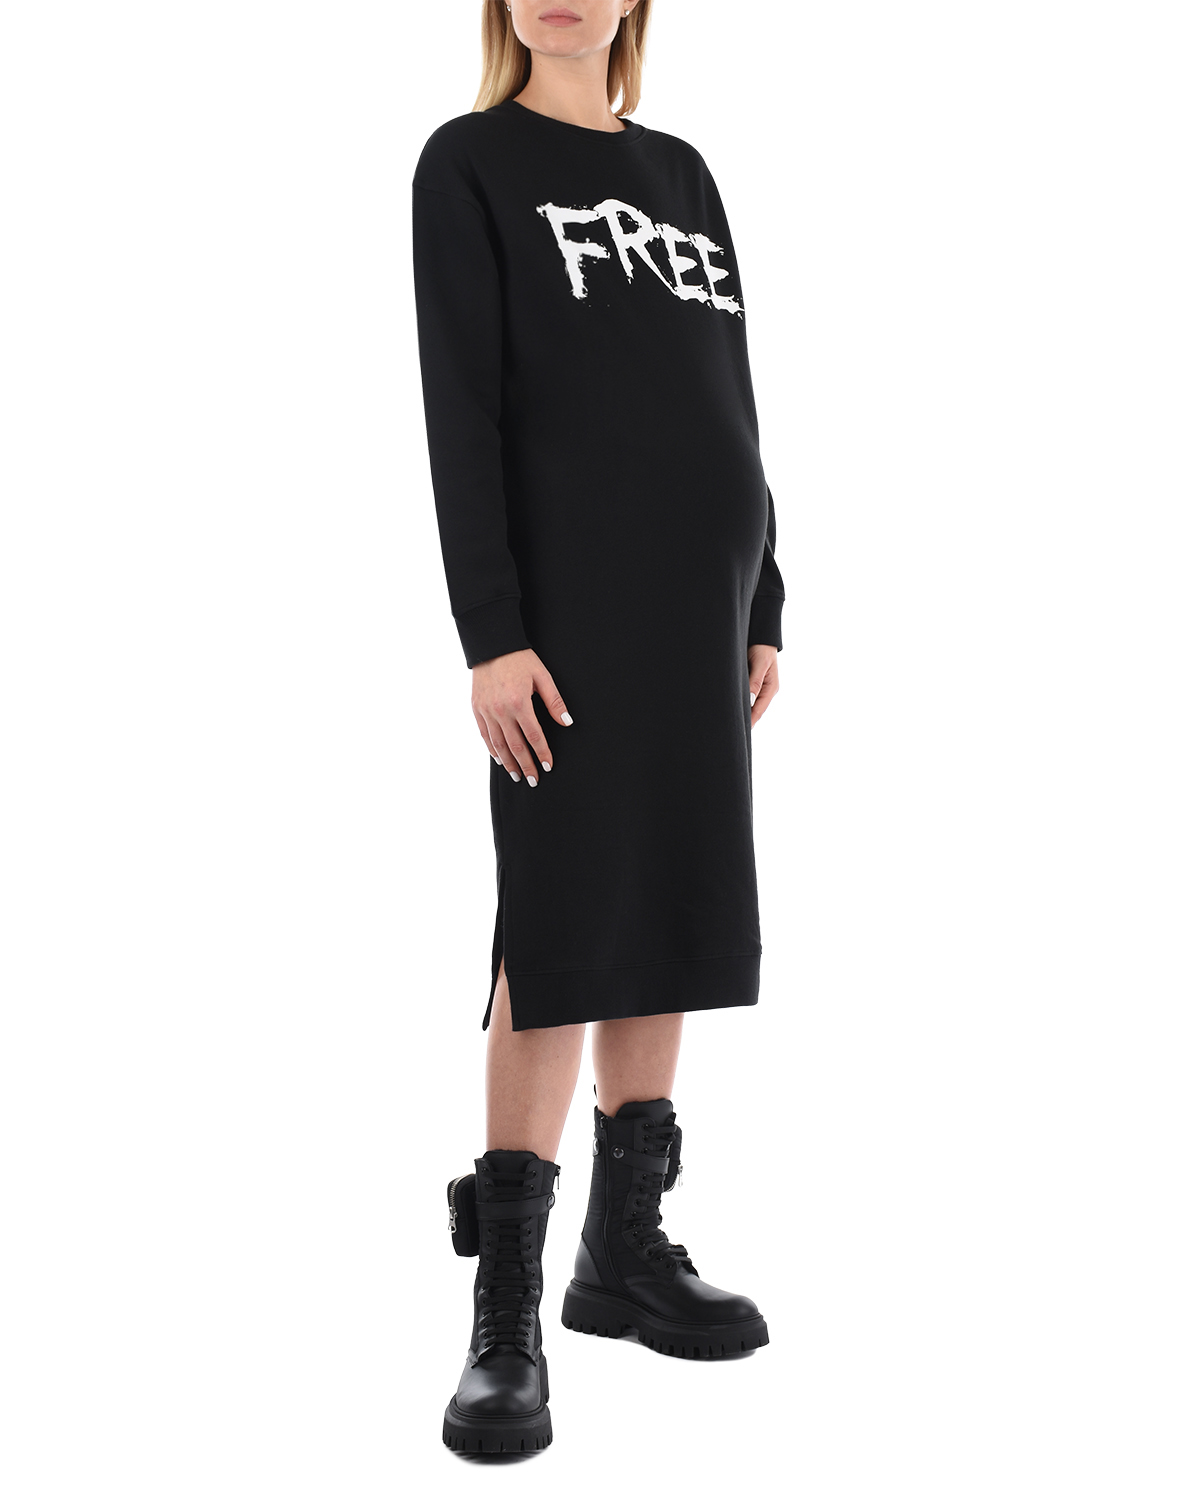 Черное платье с принтом "Free Love" 5 Preview, размер 38, цвет черный - фото 4